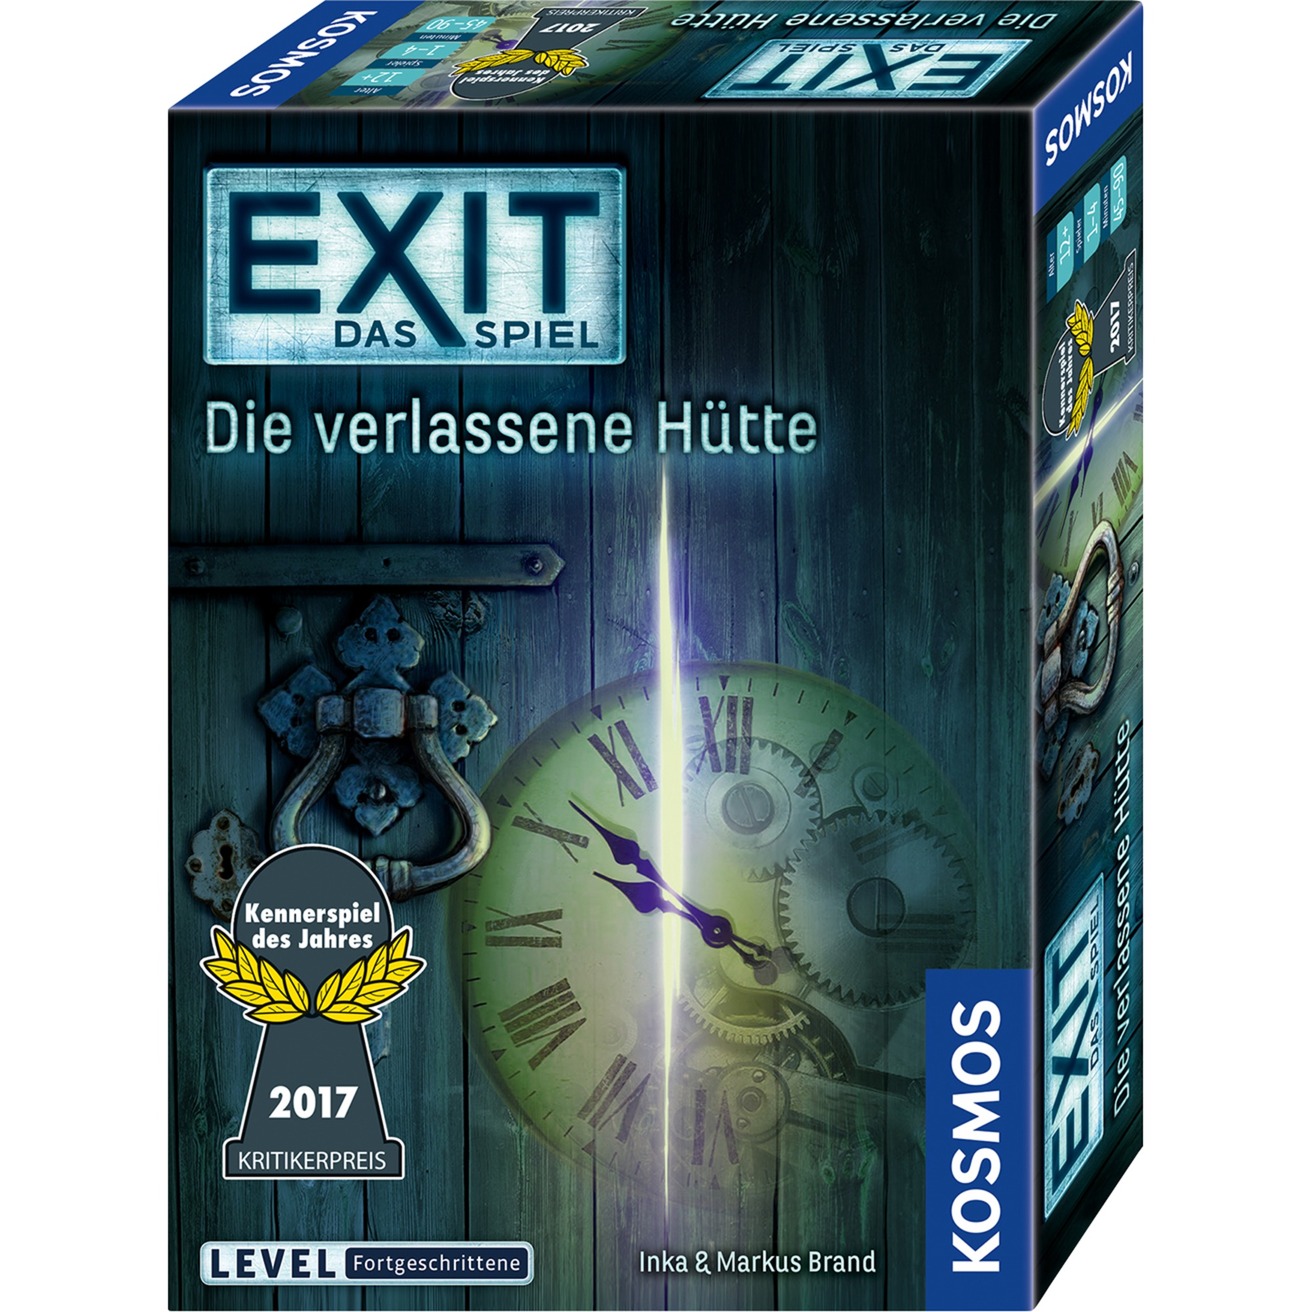 Image of Alternate - EXIT - Das Spiel - Die verlassene Hütte, Partyspiel online einkaufen bei Alternate